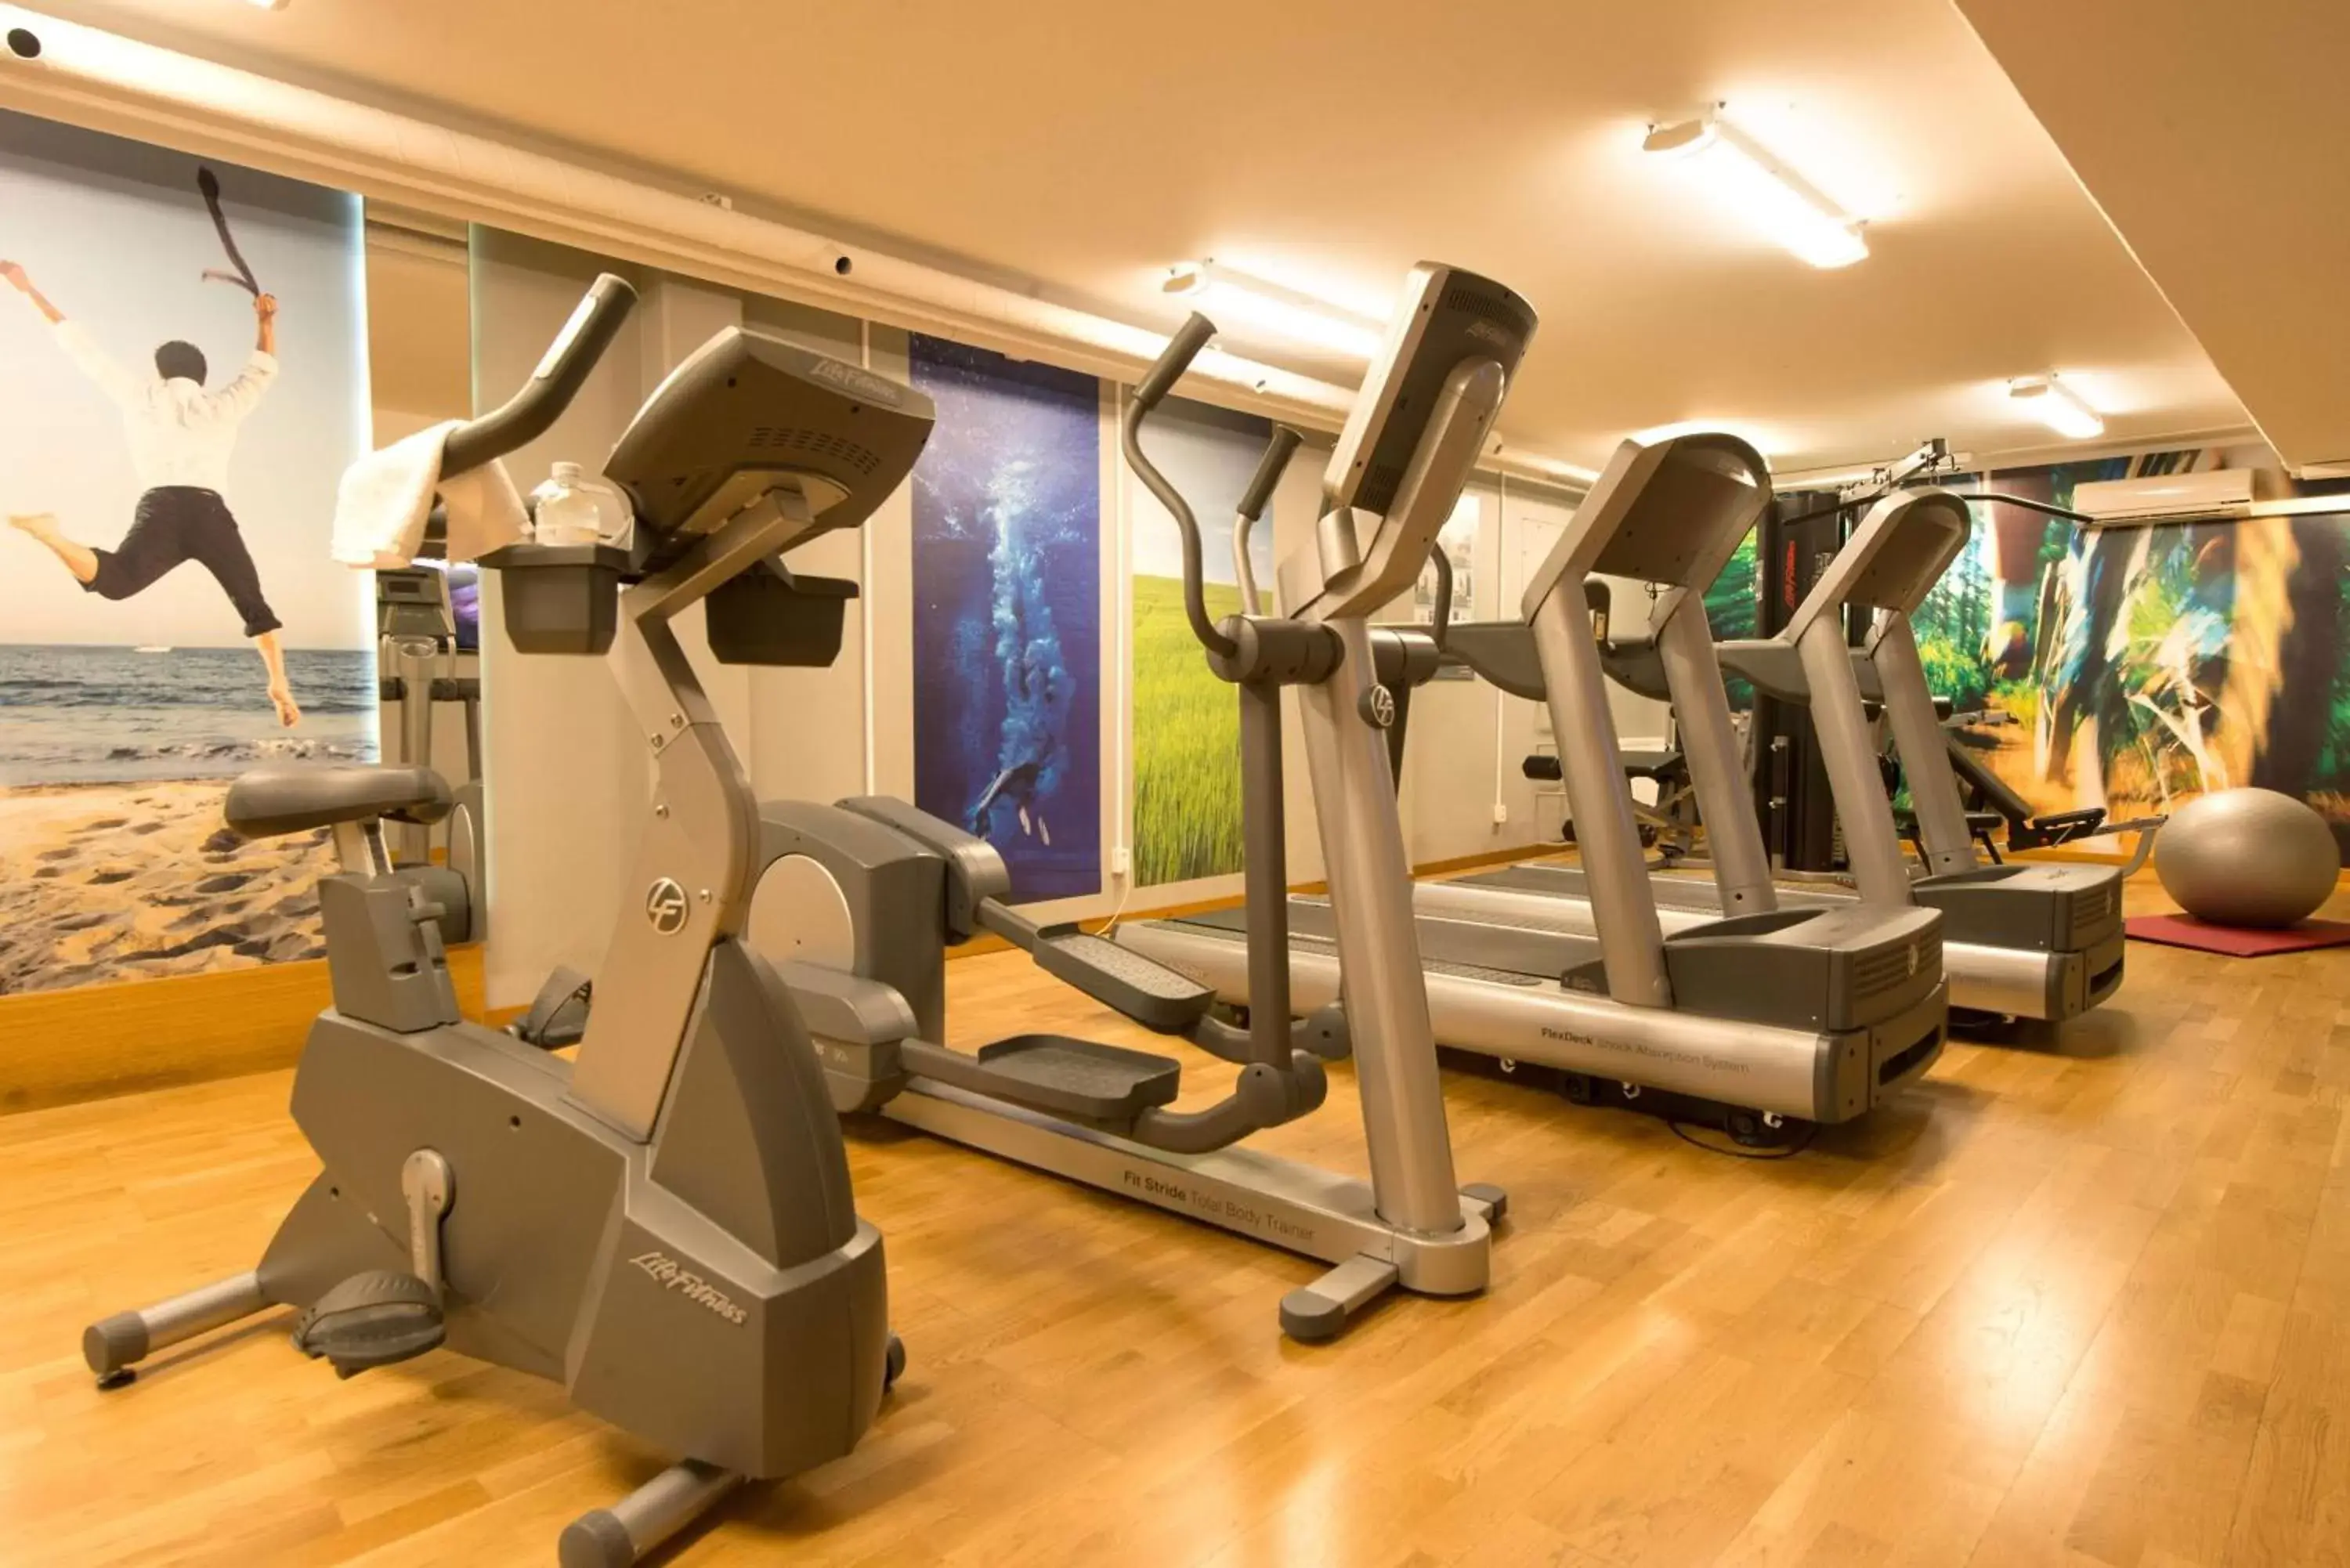 Fitness centre/facilities, Fitness Center/Facilities in Scandic Örnsköldsvik